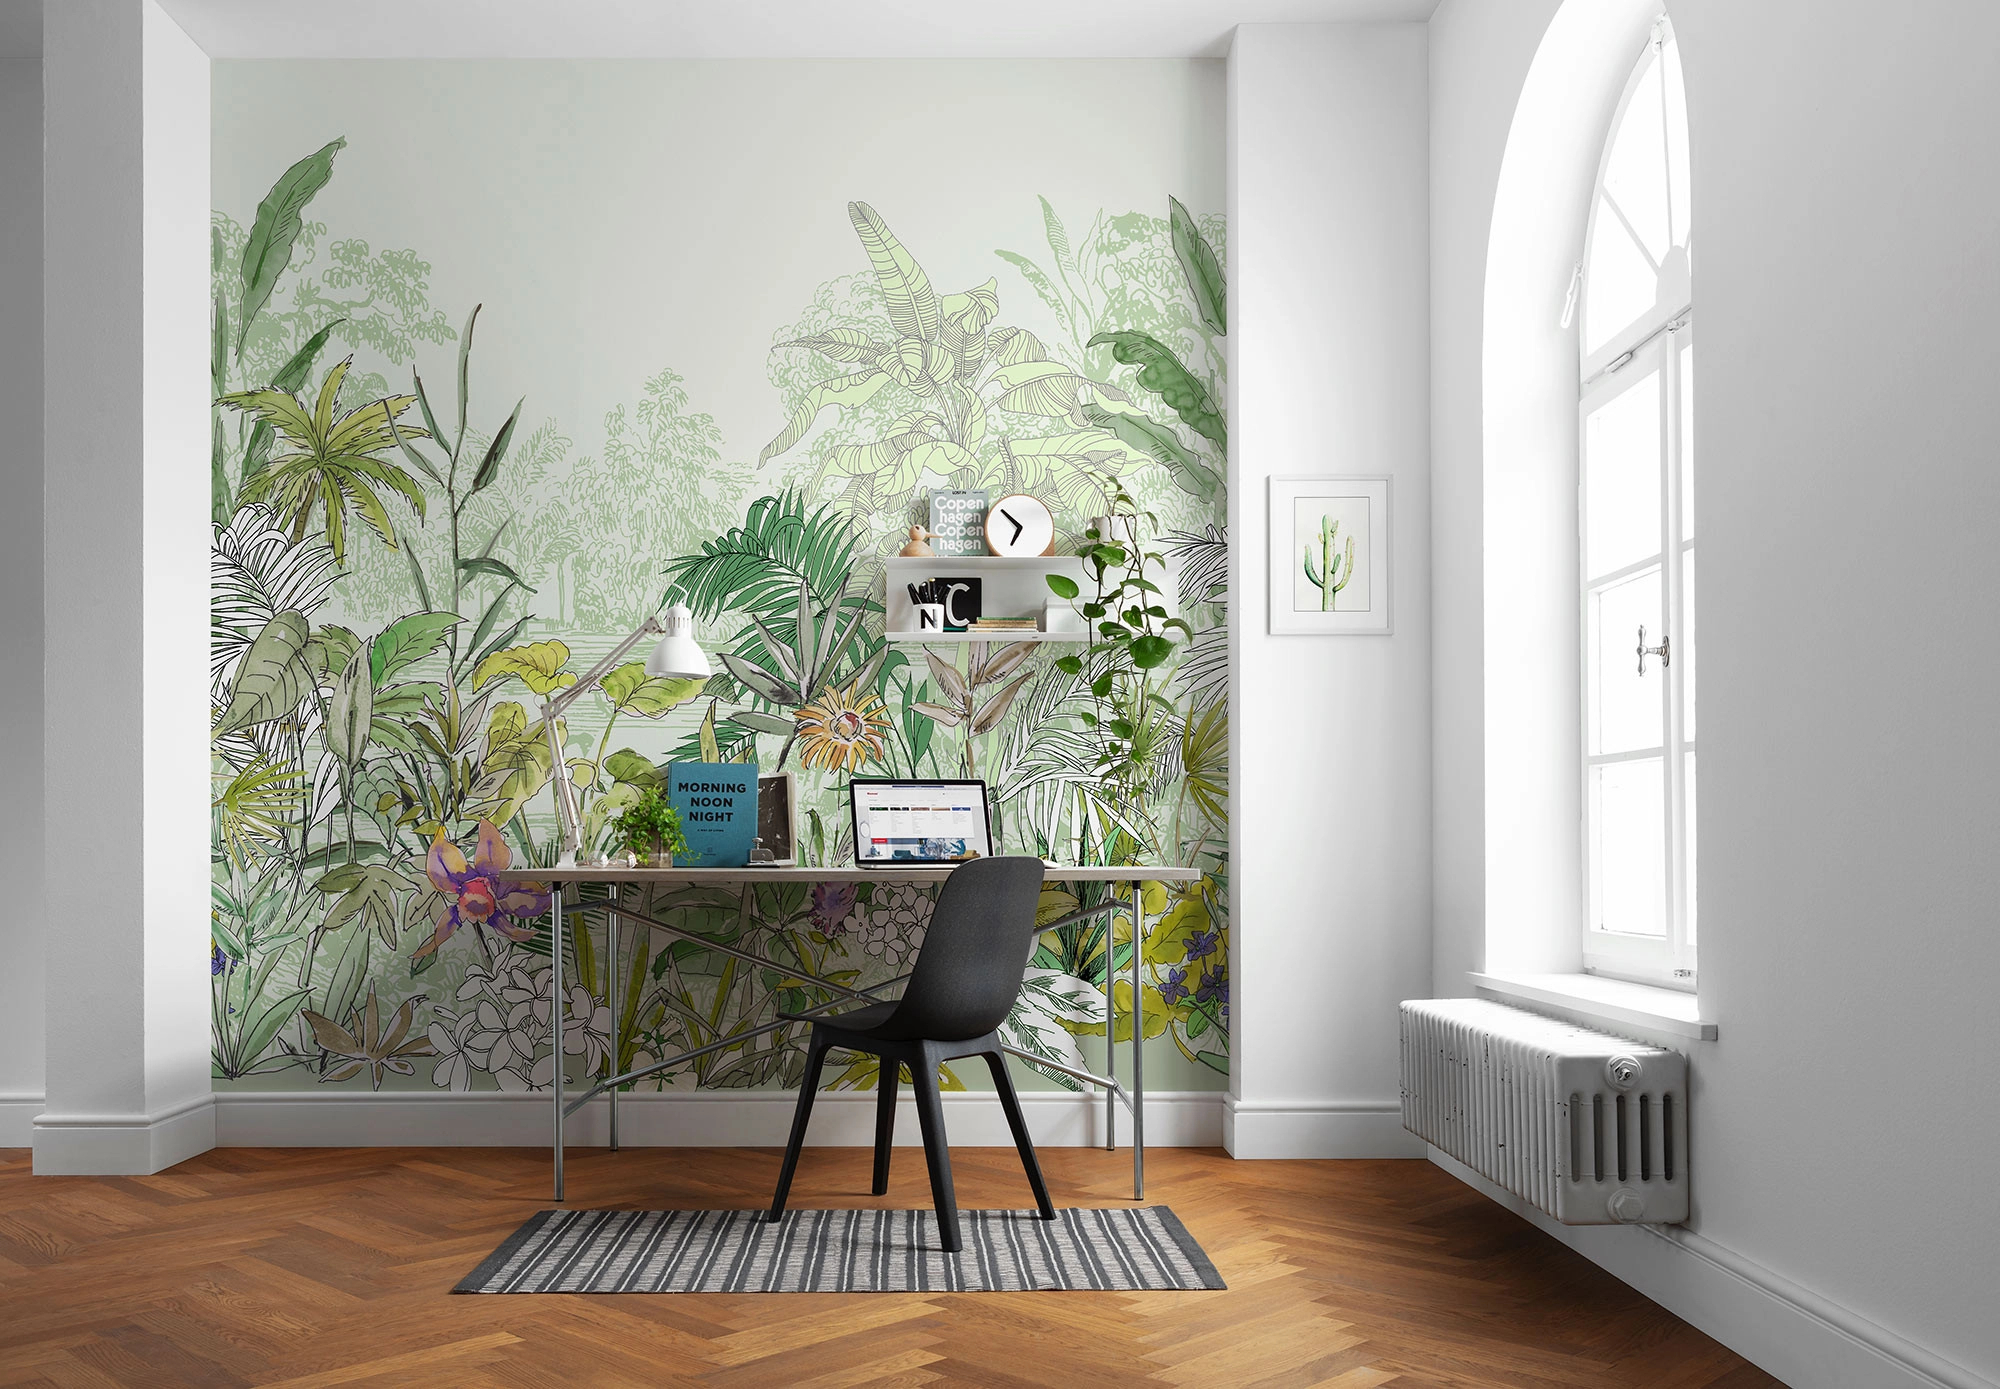 Zöld rajzolt trópusi dzsungel mintás fali poszter